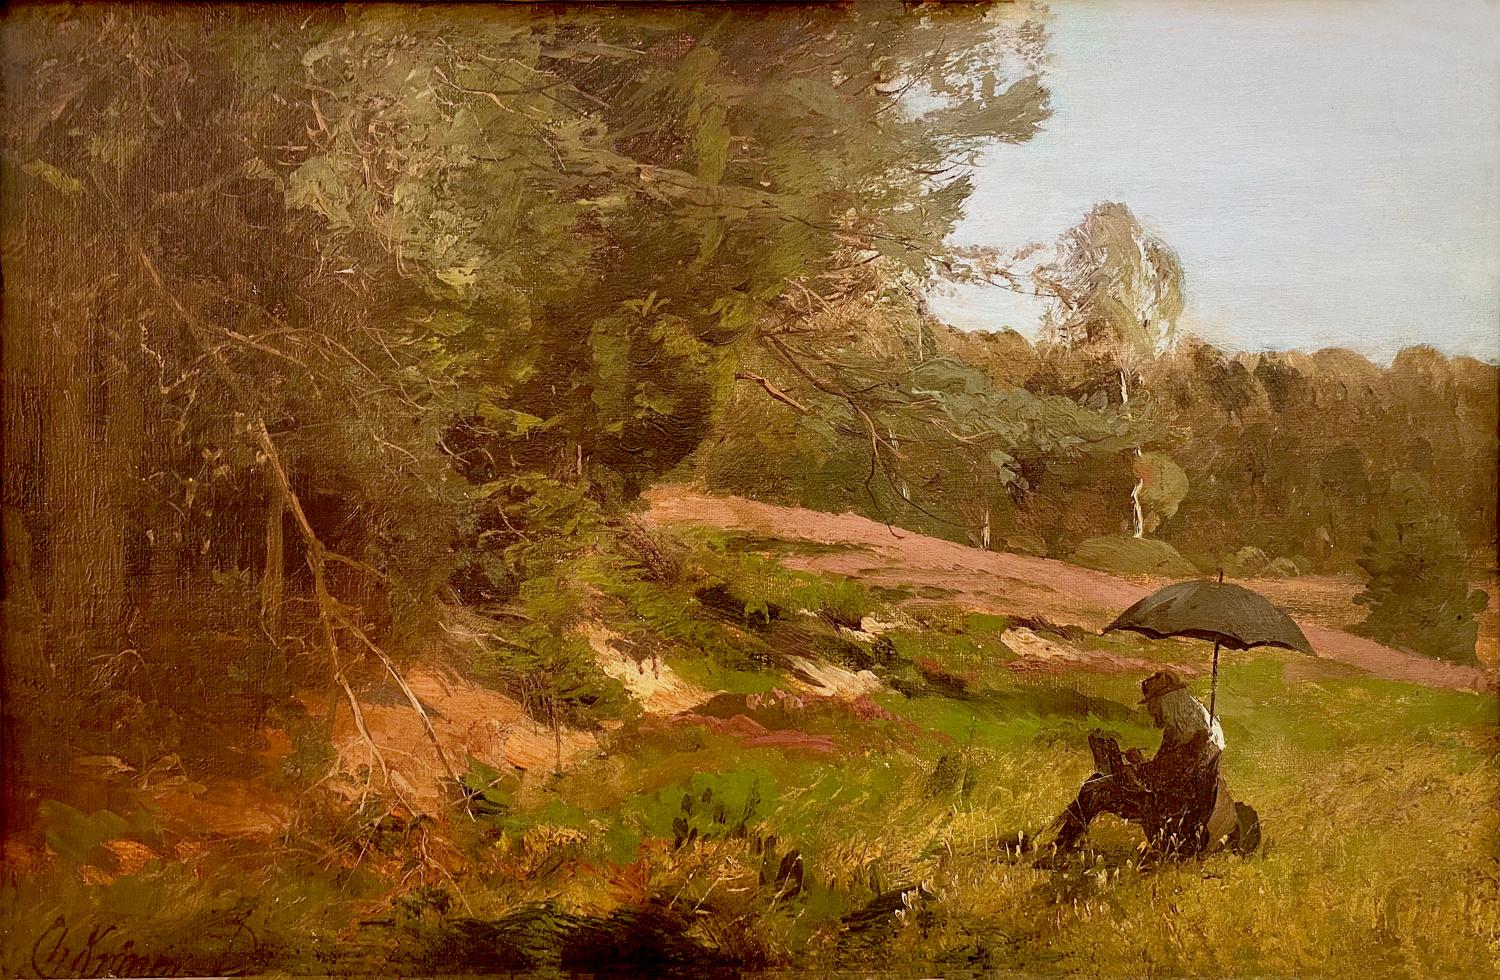 Landscape Painting Johnann Christian Kroner - The Artist at Work, peinture de paysage à l'huile allemande du XIXe siècle